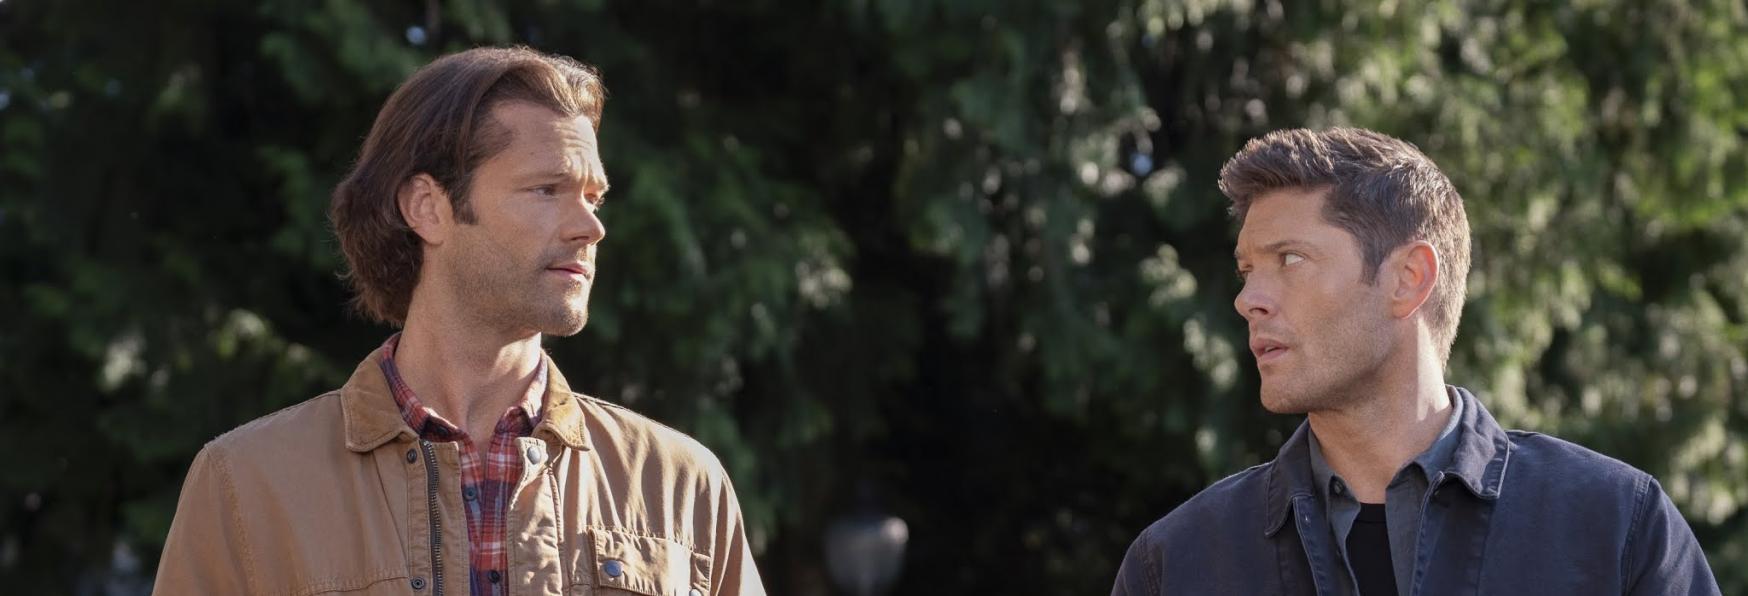 Jared Padalecki (Supernatural) è rimasto Coinvolto in un Grave Incidente d'Auto